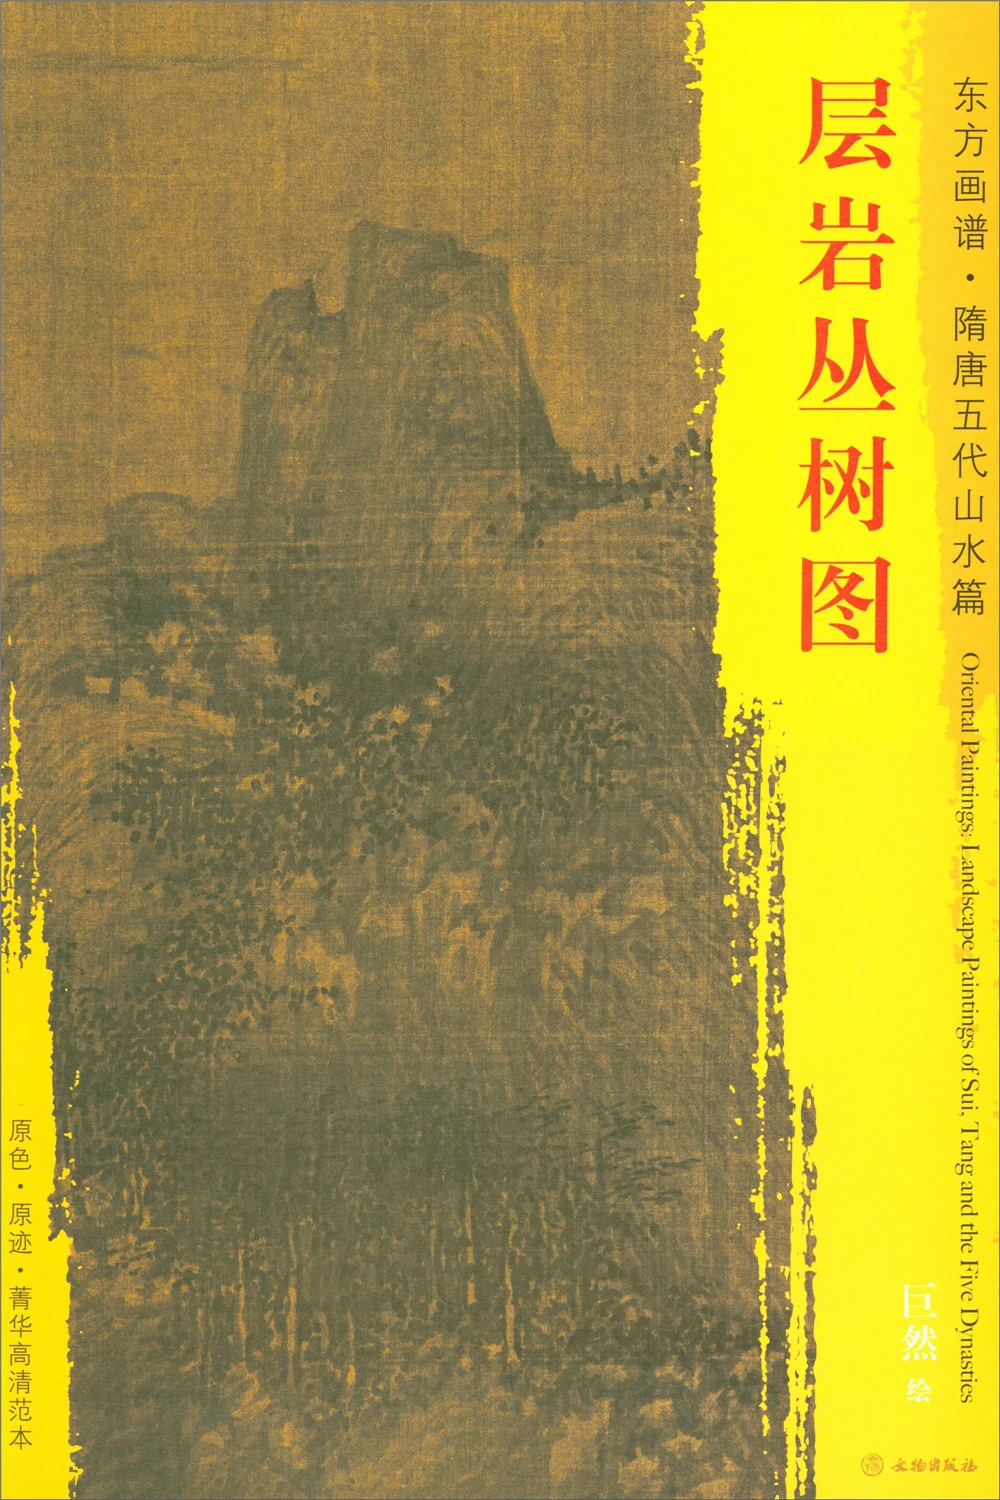 Восточные картины. Пейзажи Суй Тан и пять династий. Элитный шаблон высокой